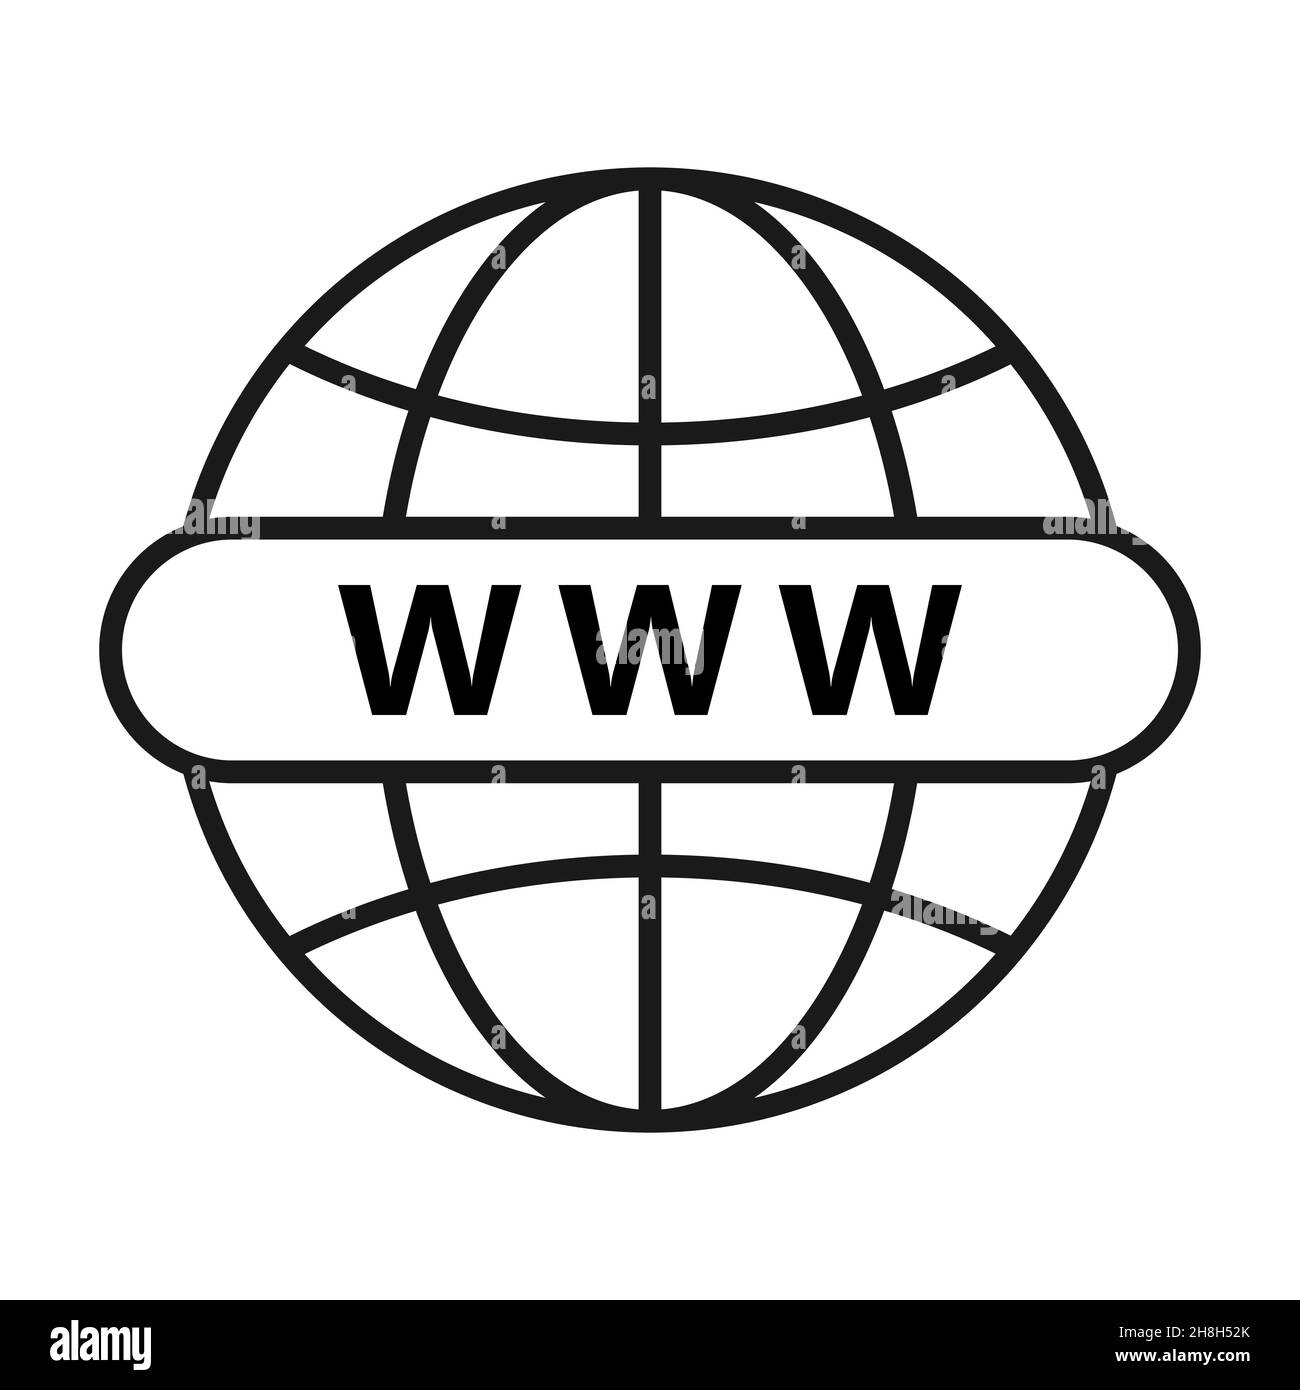 Icona Web. Icona globo www. Icone flat vettoriali per siti Web o Internet per applicazioni e siti Web. Vai al simbolo Web. Icona vettore, isolata su sfondo bianco Illustrazione Vettoriale